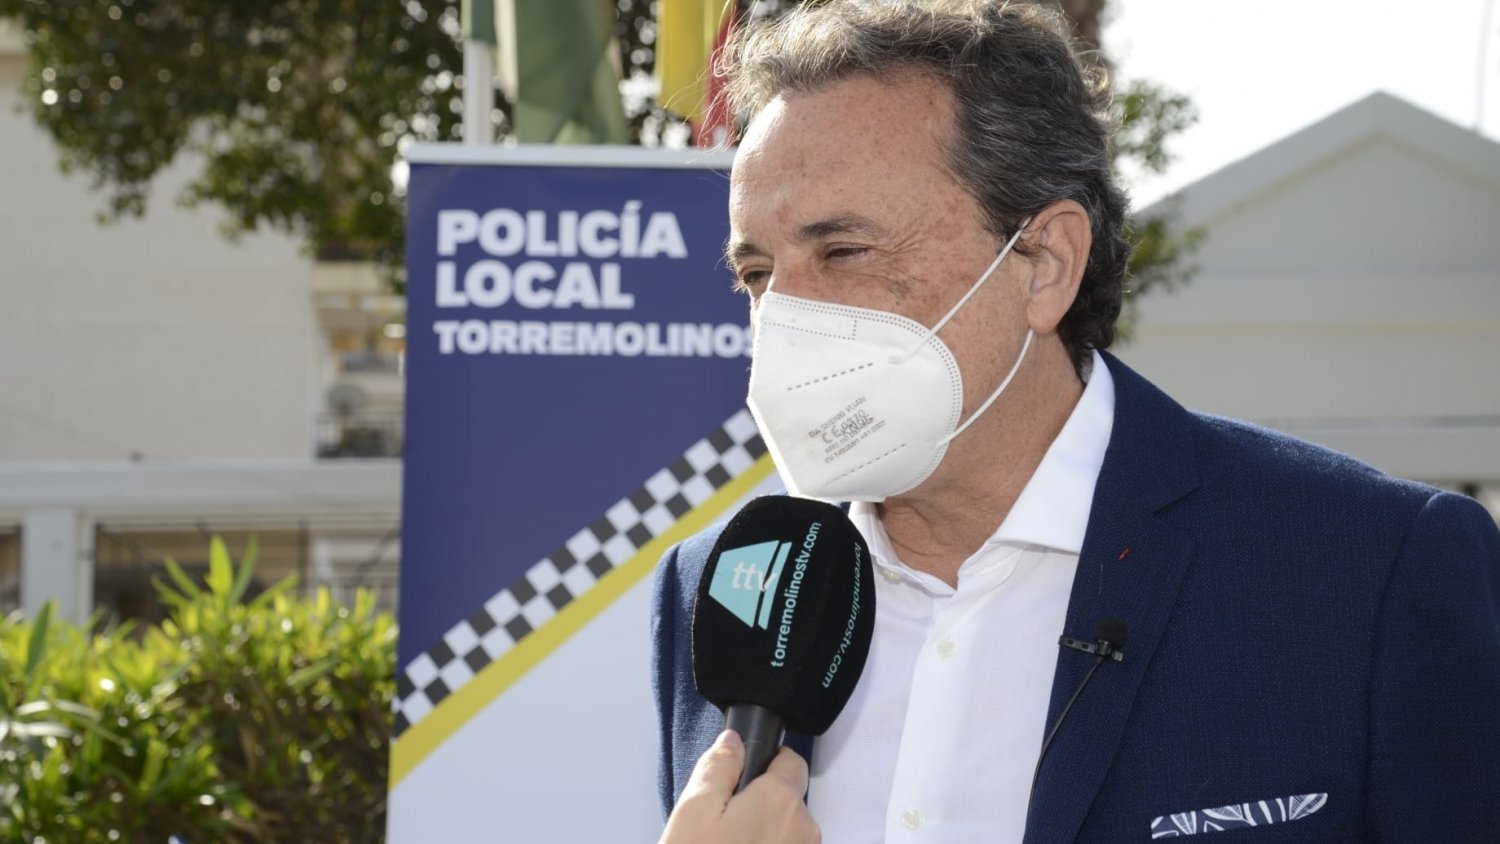 La Policía Local de Torremolinos levanta más de 5.500 actas por infracciones Covid en la pandemia